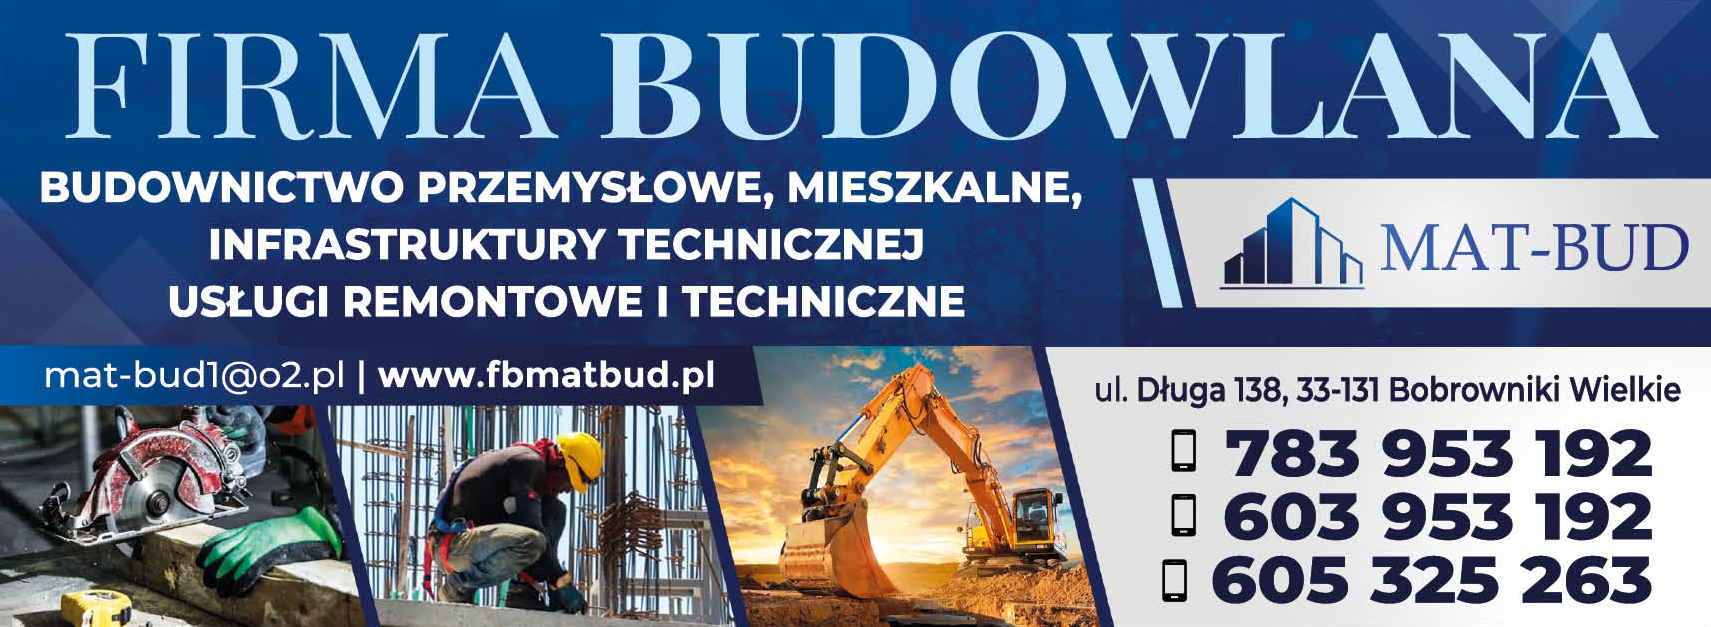 MAT-BUD Firma Budowlana Bobrowniki Wielkie Budownictwo Przemysłowe, Mieszkalne, Infrastruktury Tech.